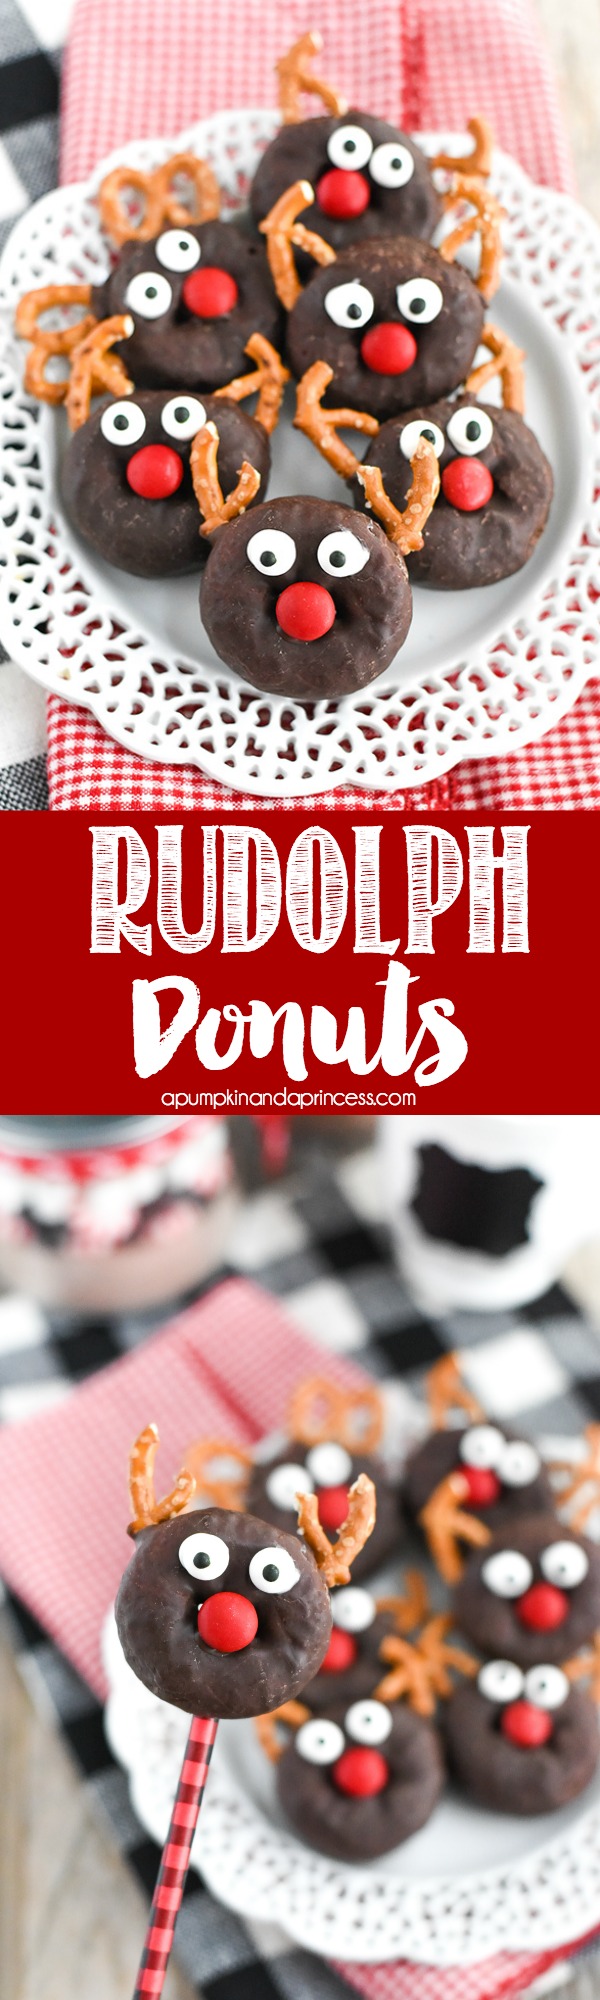 Mini Rudolph Donuts